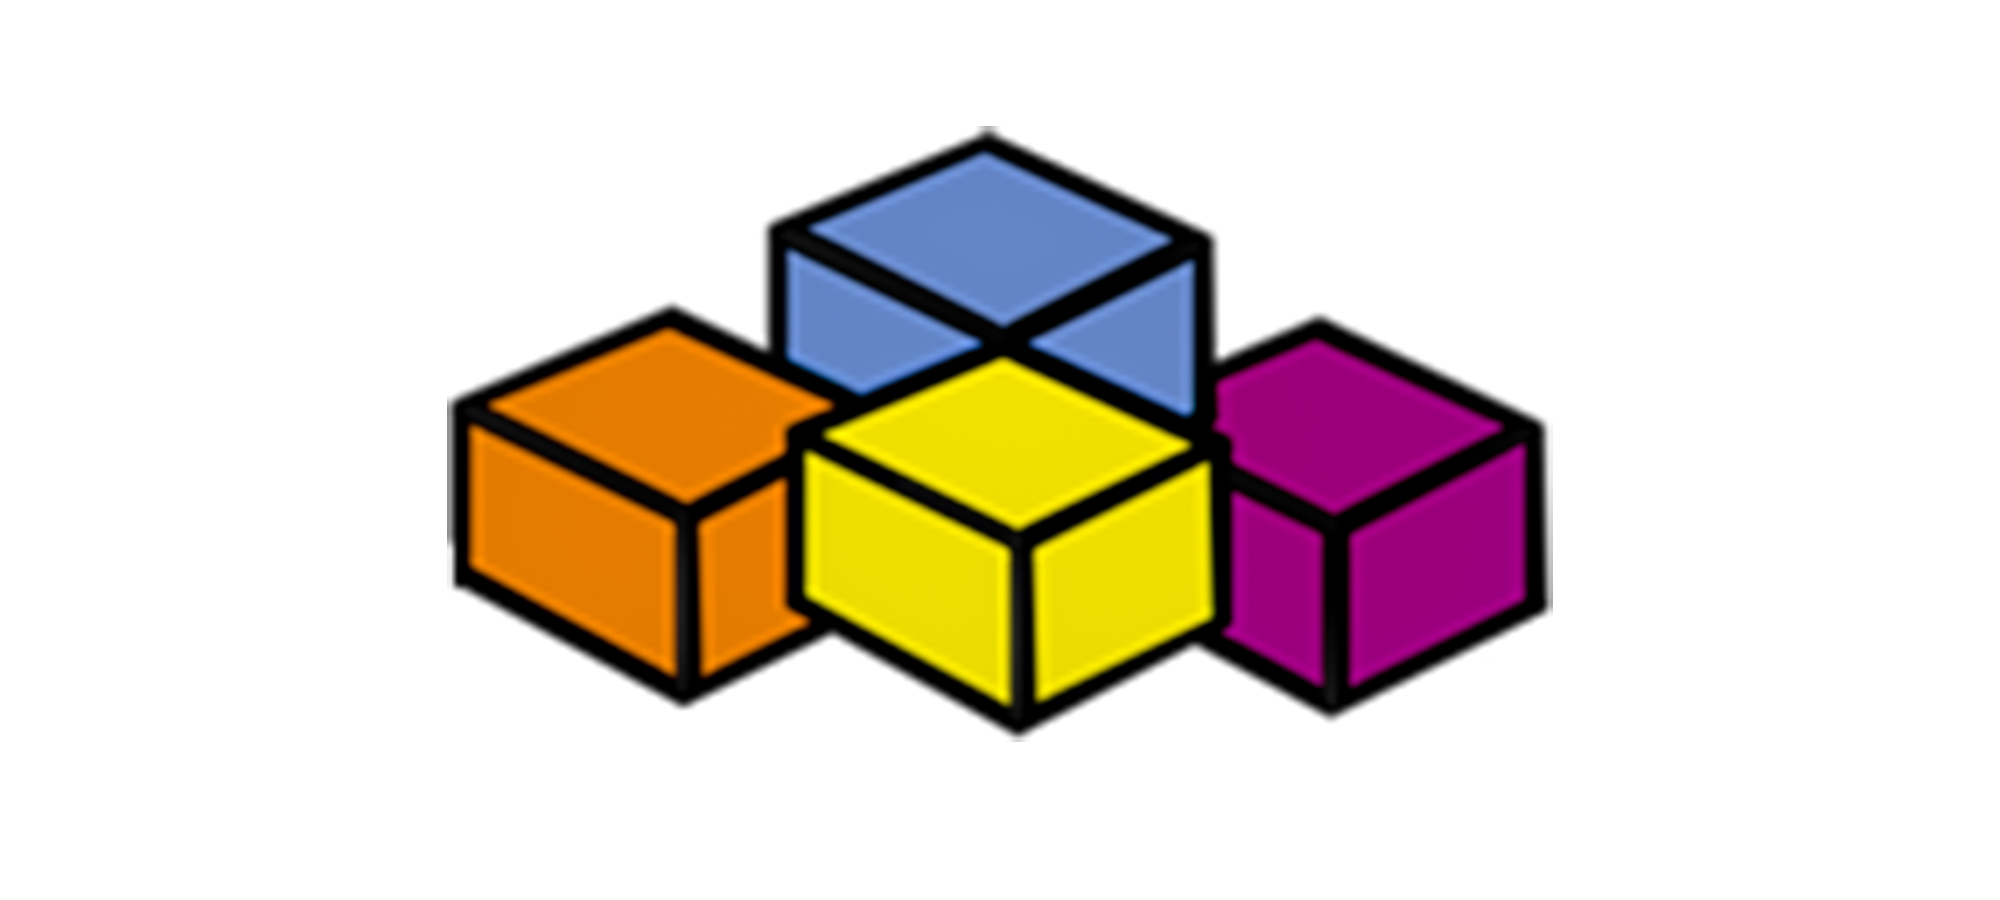 Illustration de 4 blocs de couleurs différentes